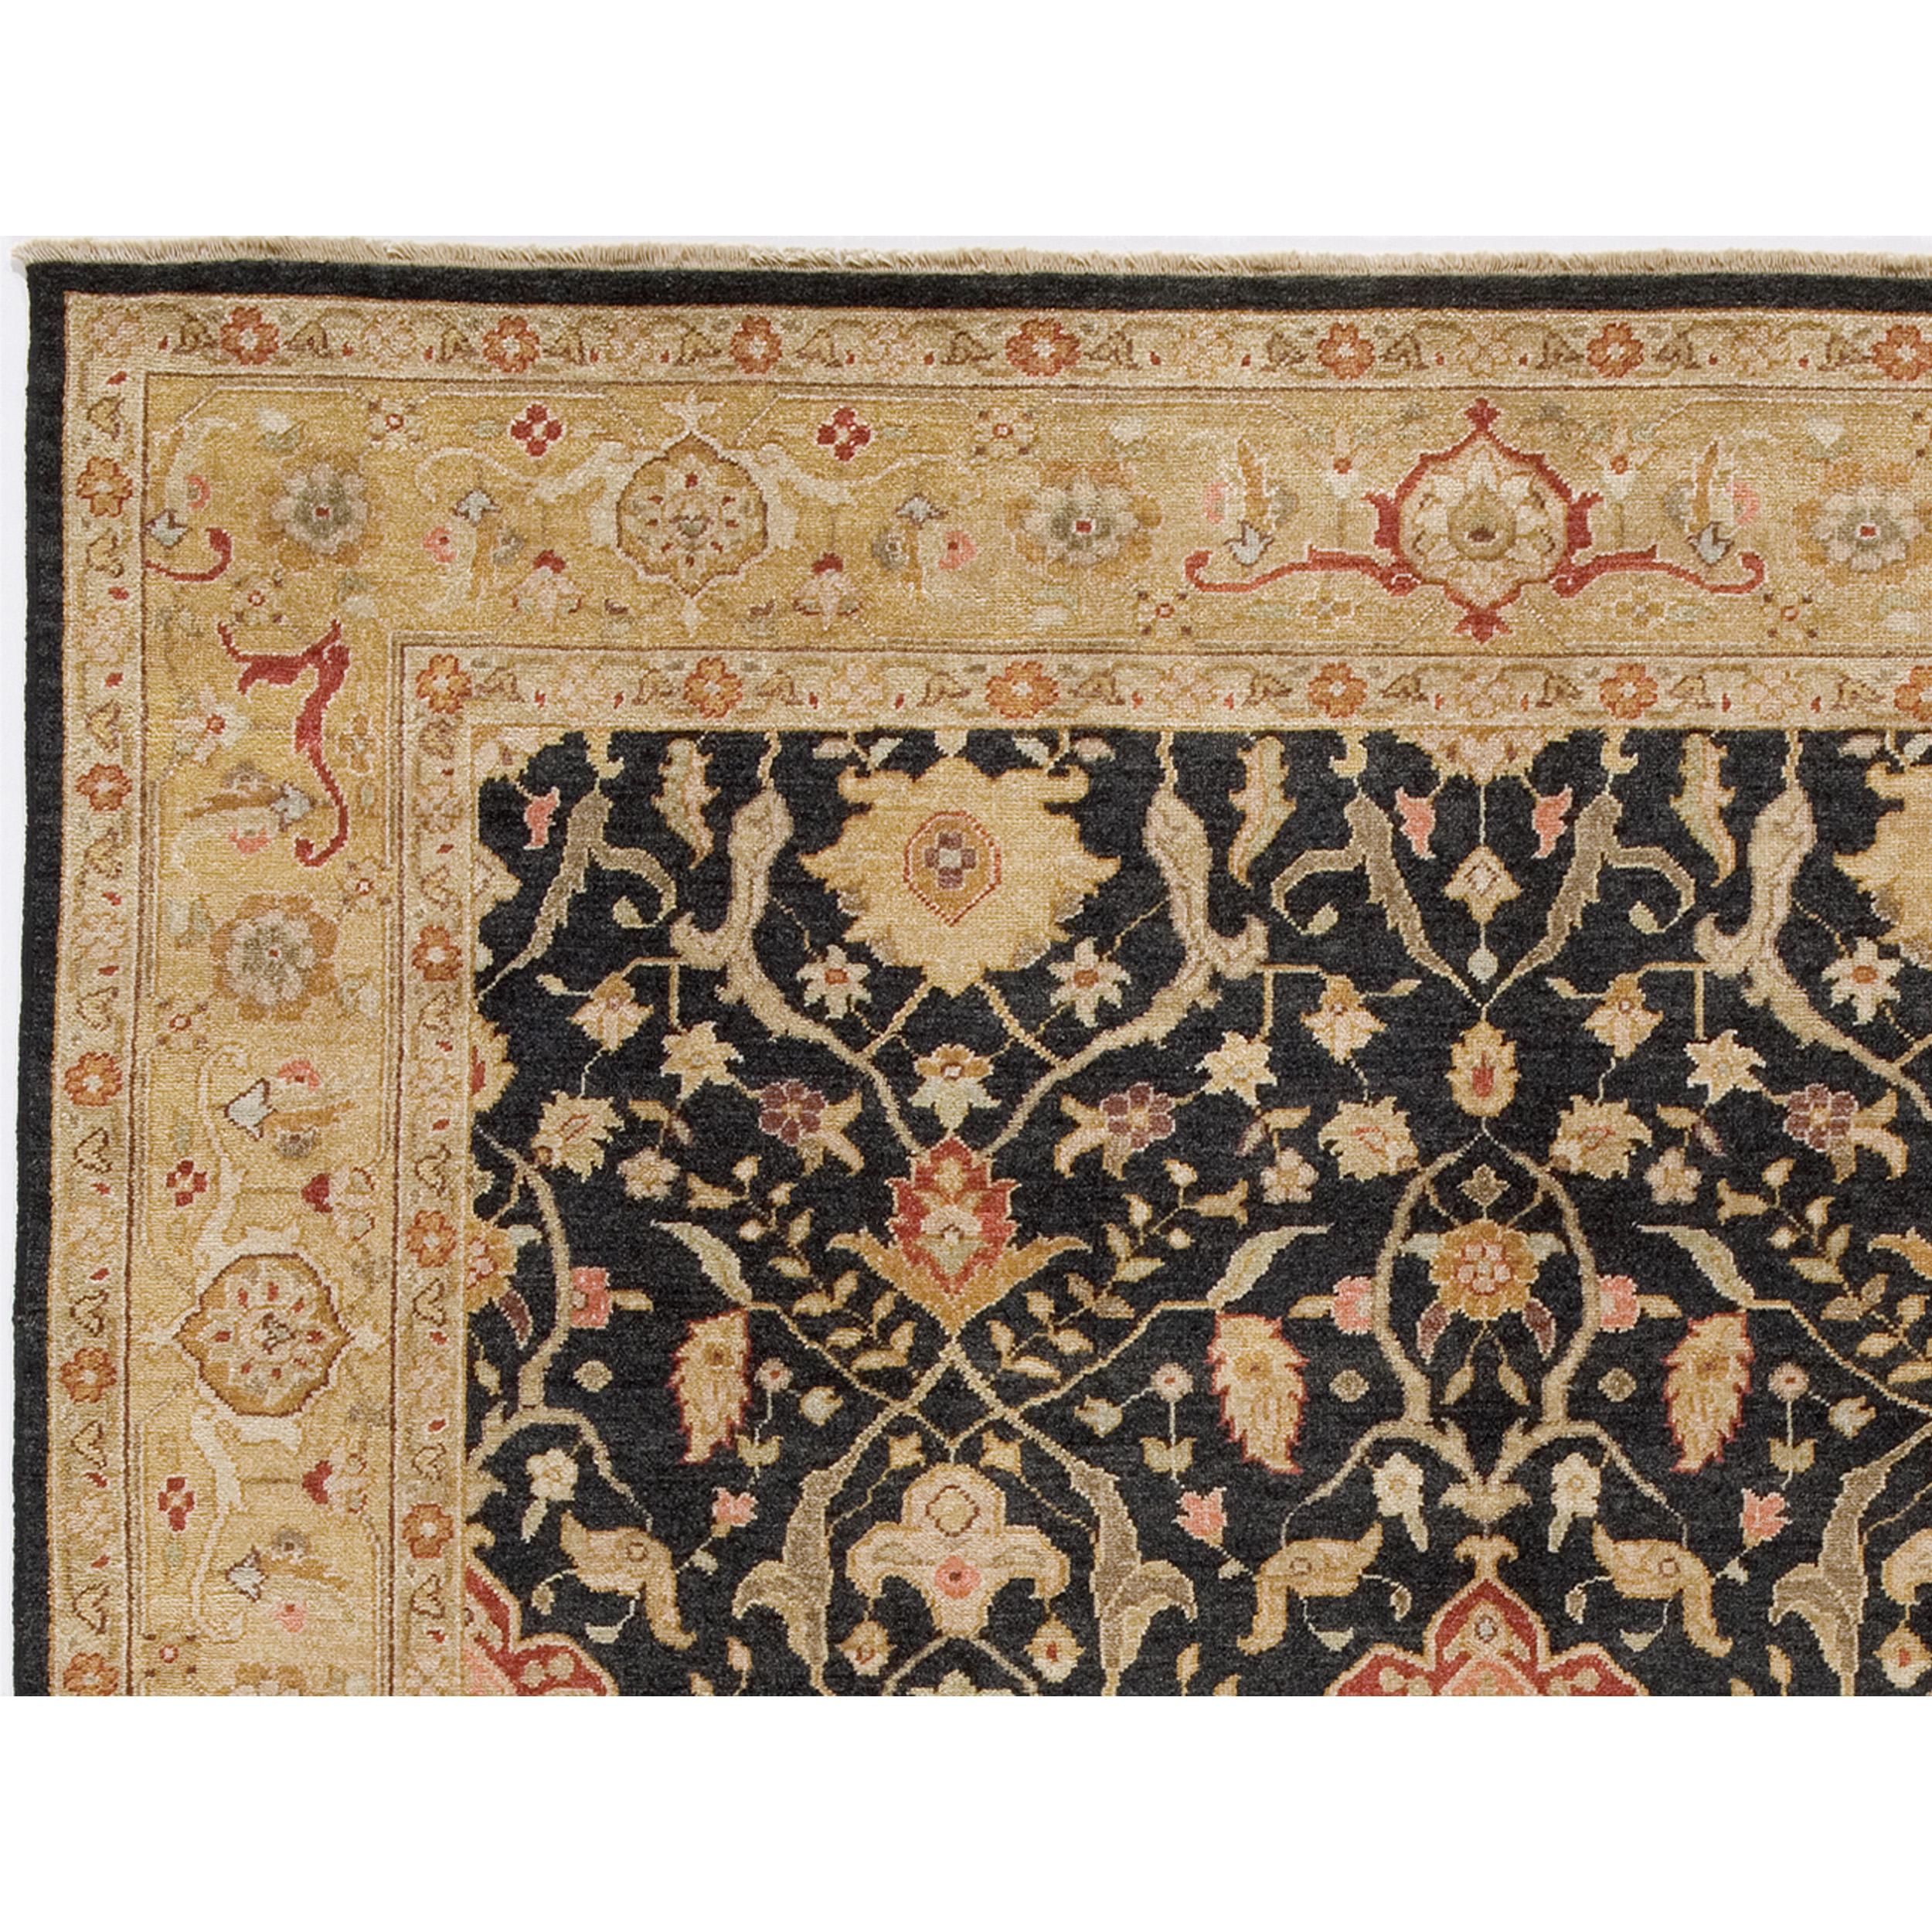 Ce luxueux tapis traditionnel noué à la main, qui a fait l'objet d'un travail méticuleux, est fabriqué à partir de la laine la plus fine. Ce tapis transcende sa fonction utilitaire et devient une œuvre d'art qui ravit les sens et s'harmonise